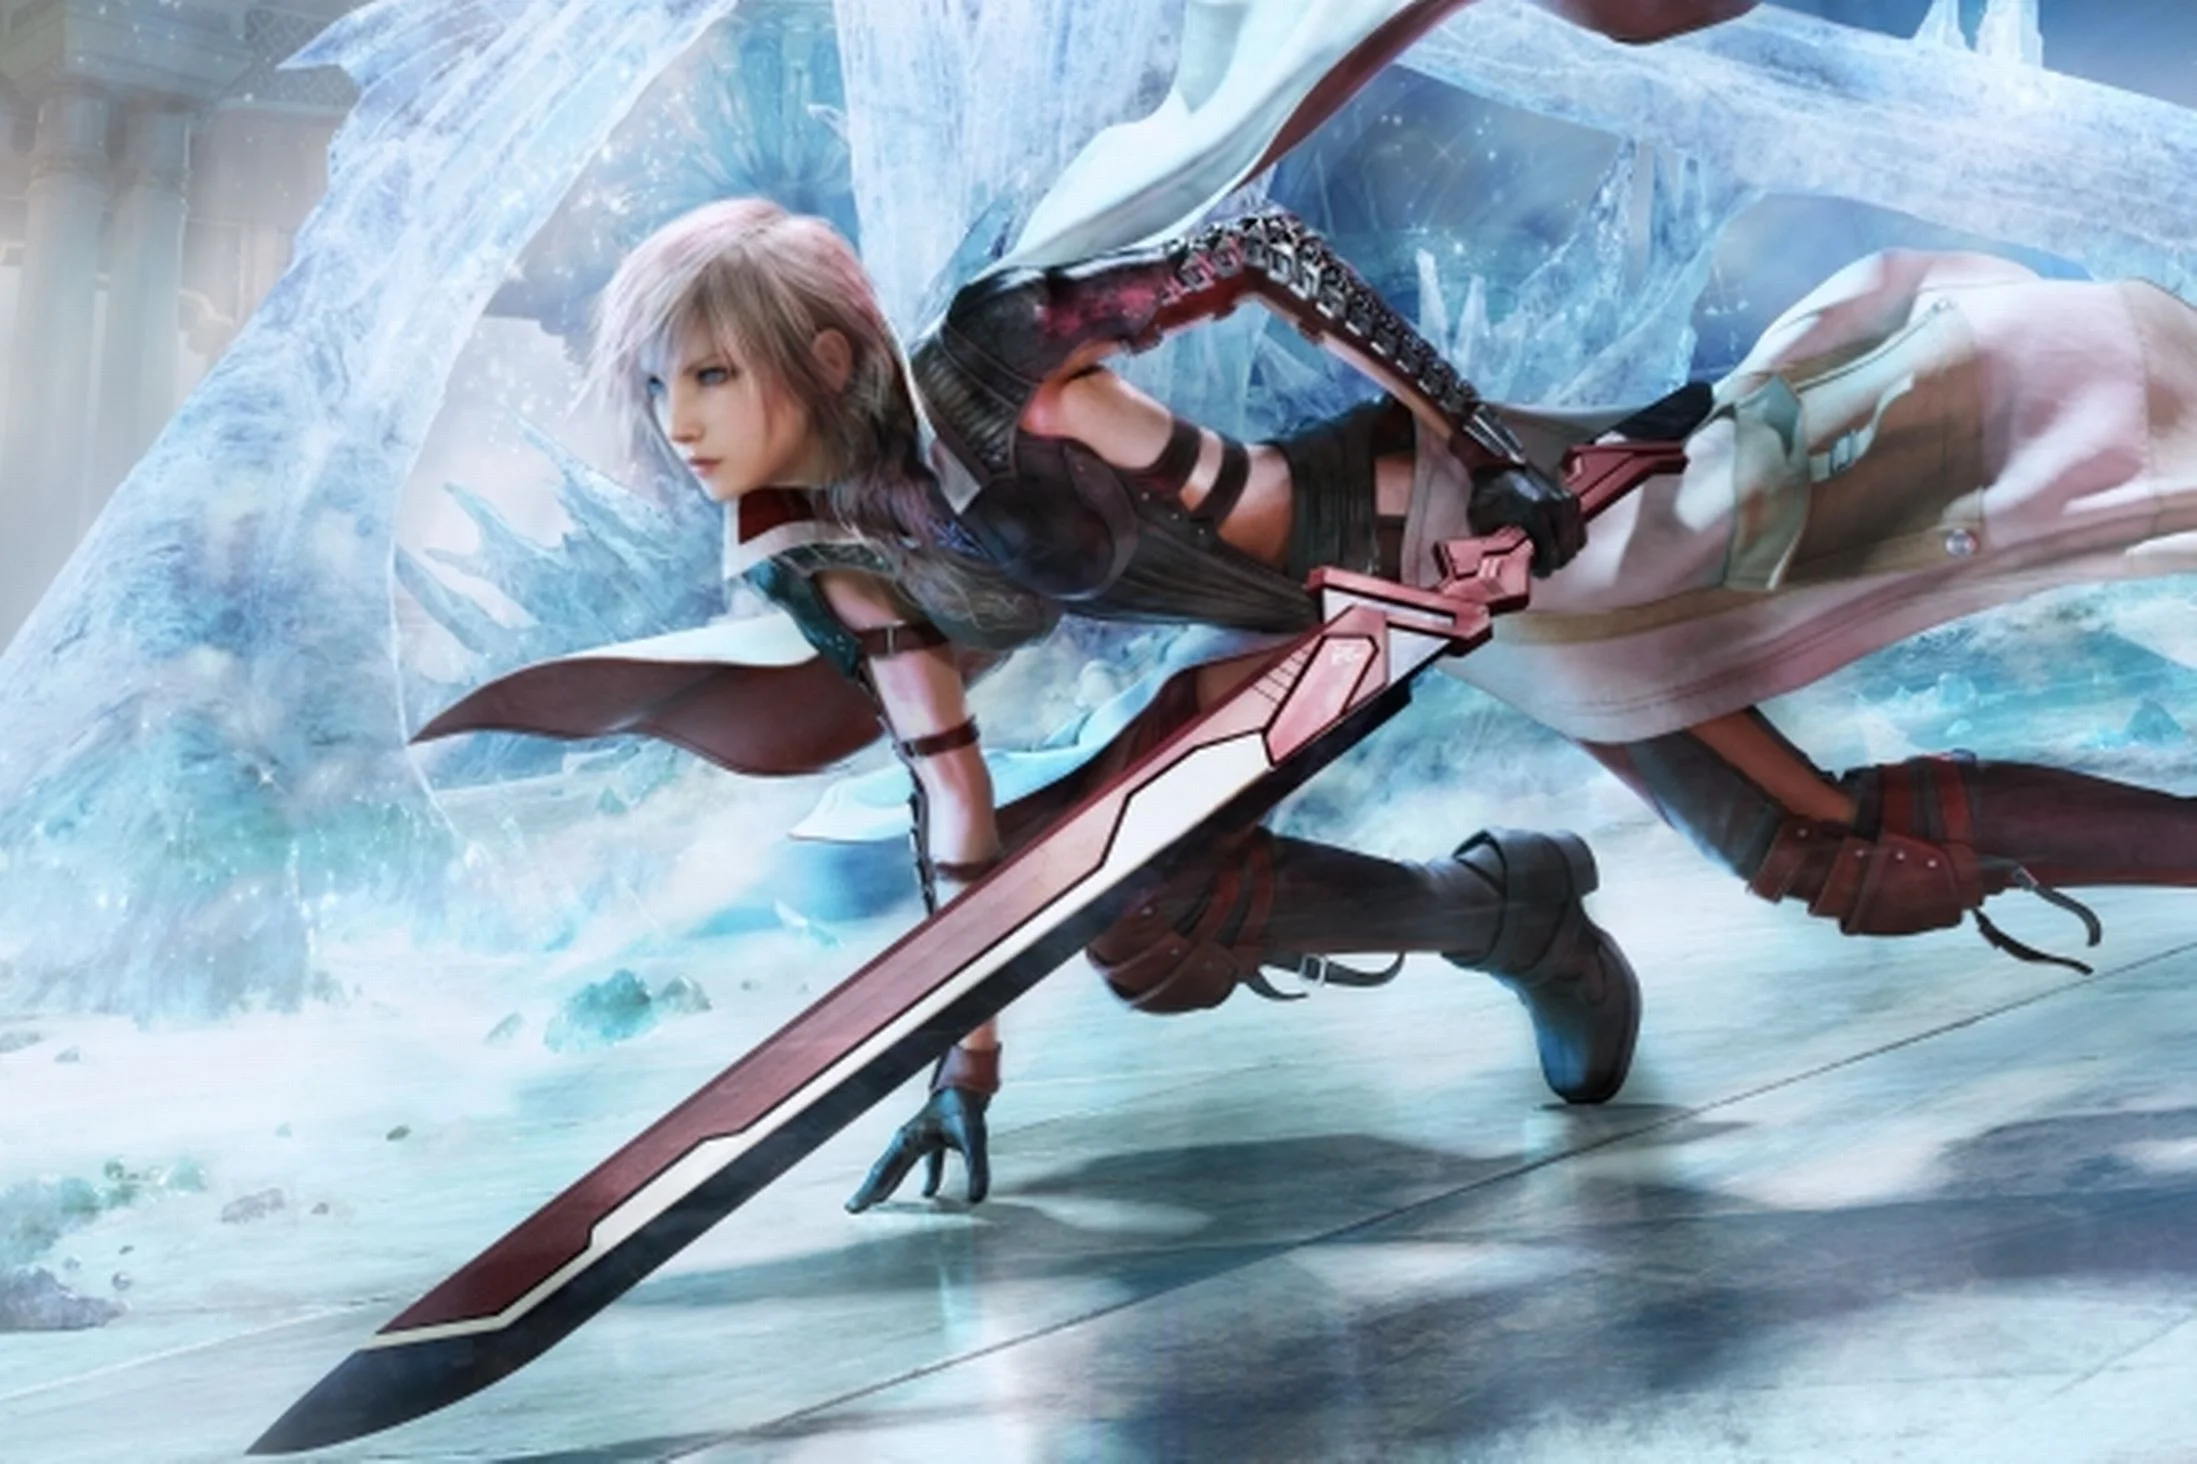 Обнародованы новые скриншоты Lightning Returns: Final Fantasy XIII - изображение обложка